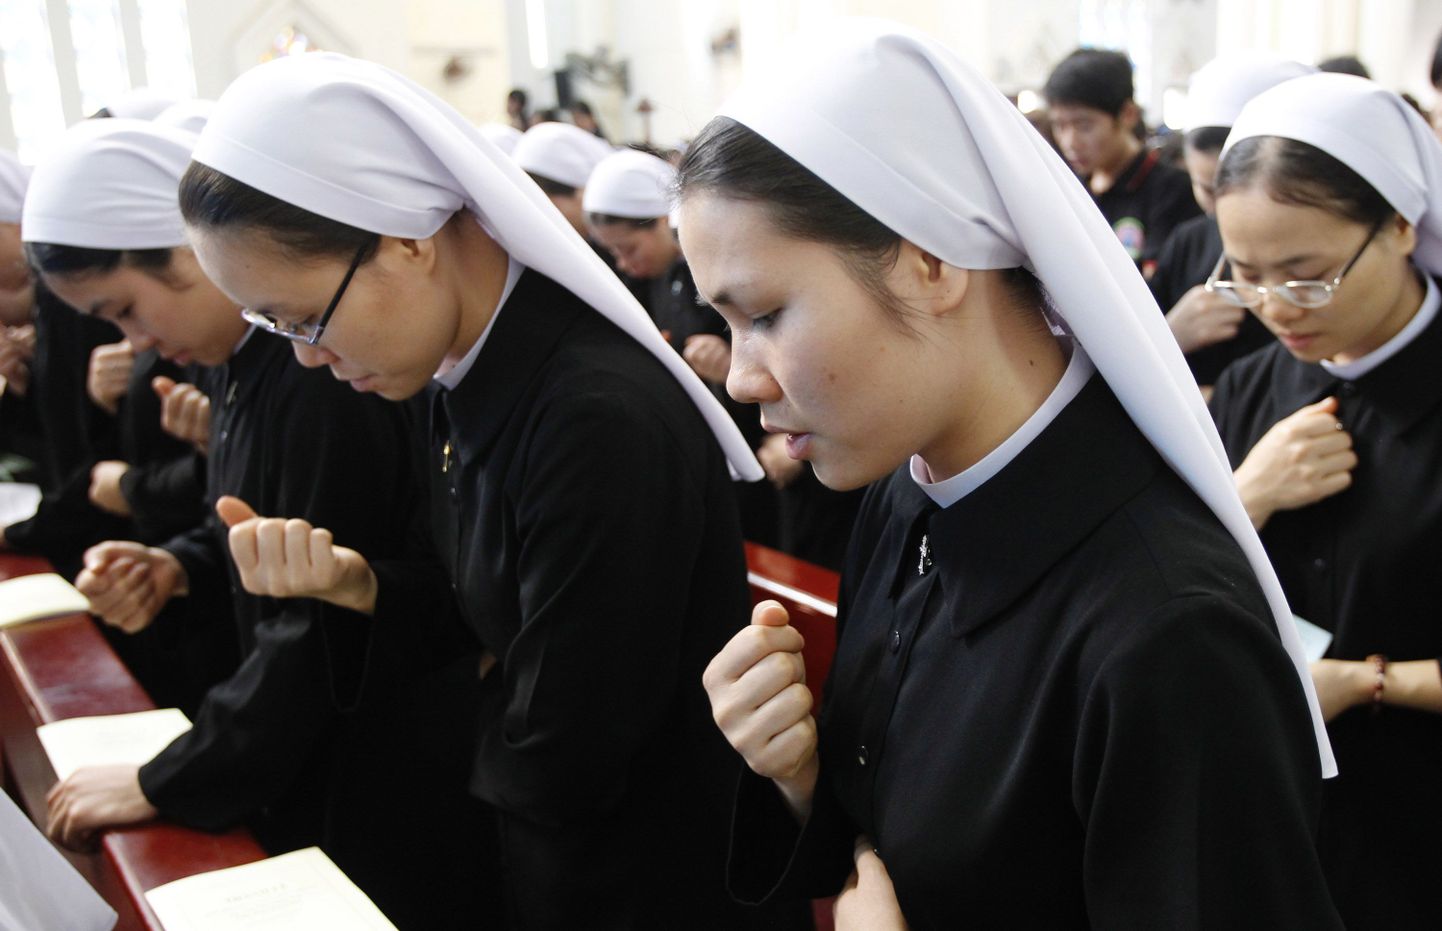 Katoliku nunnad